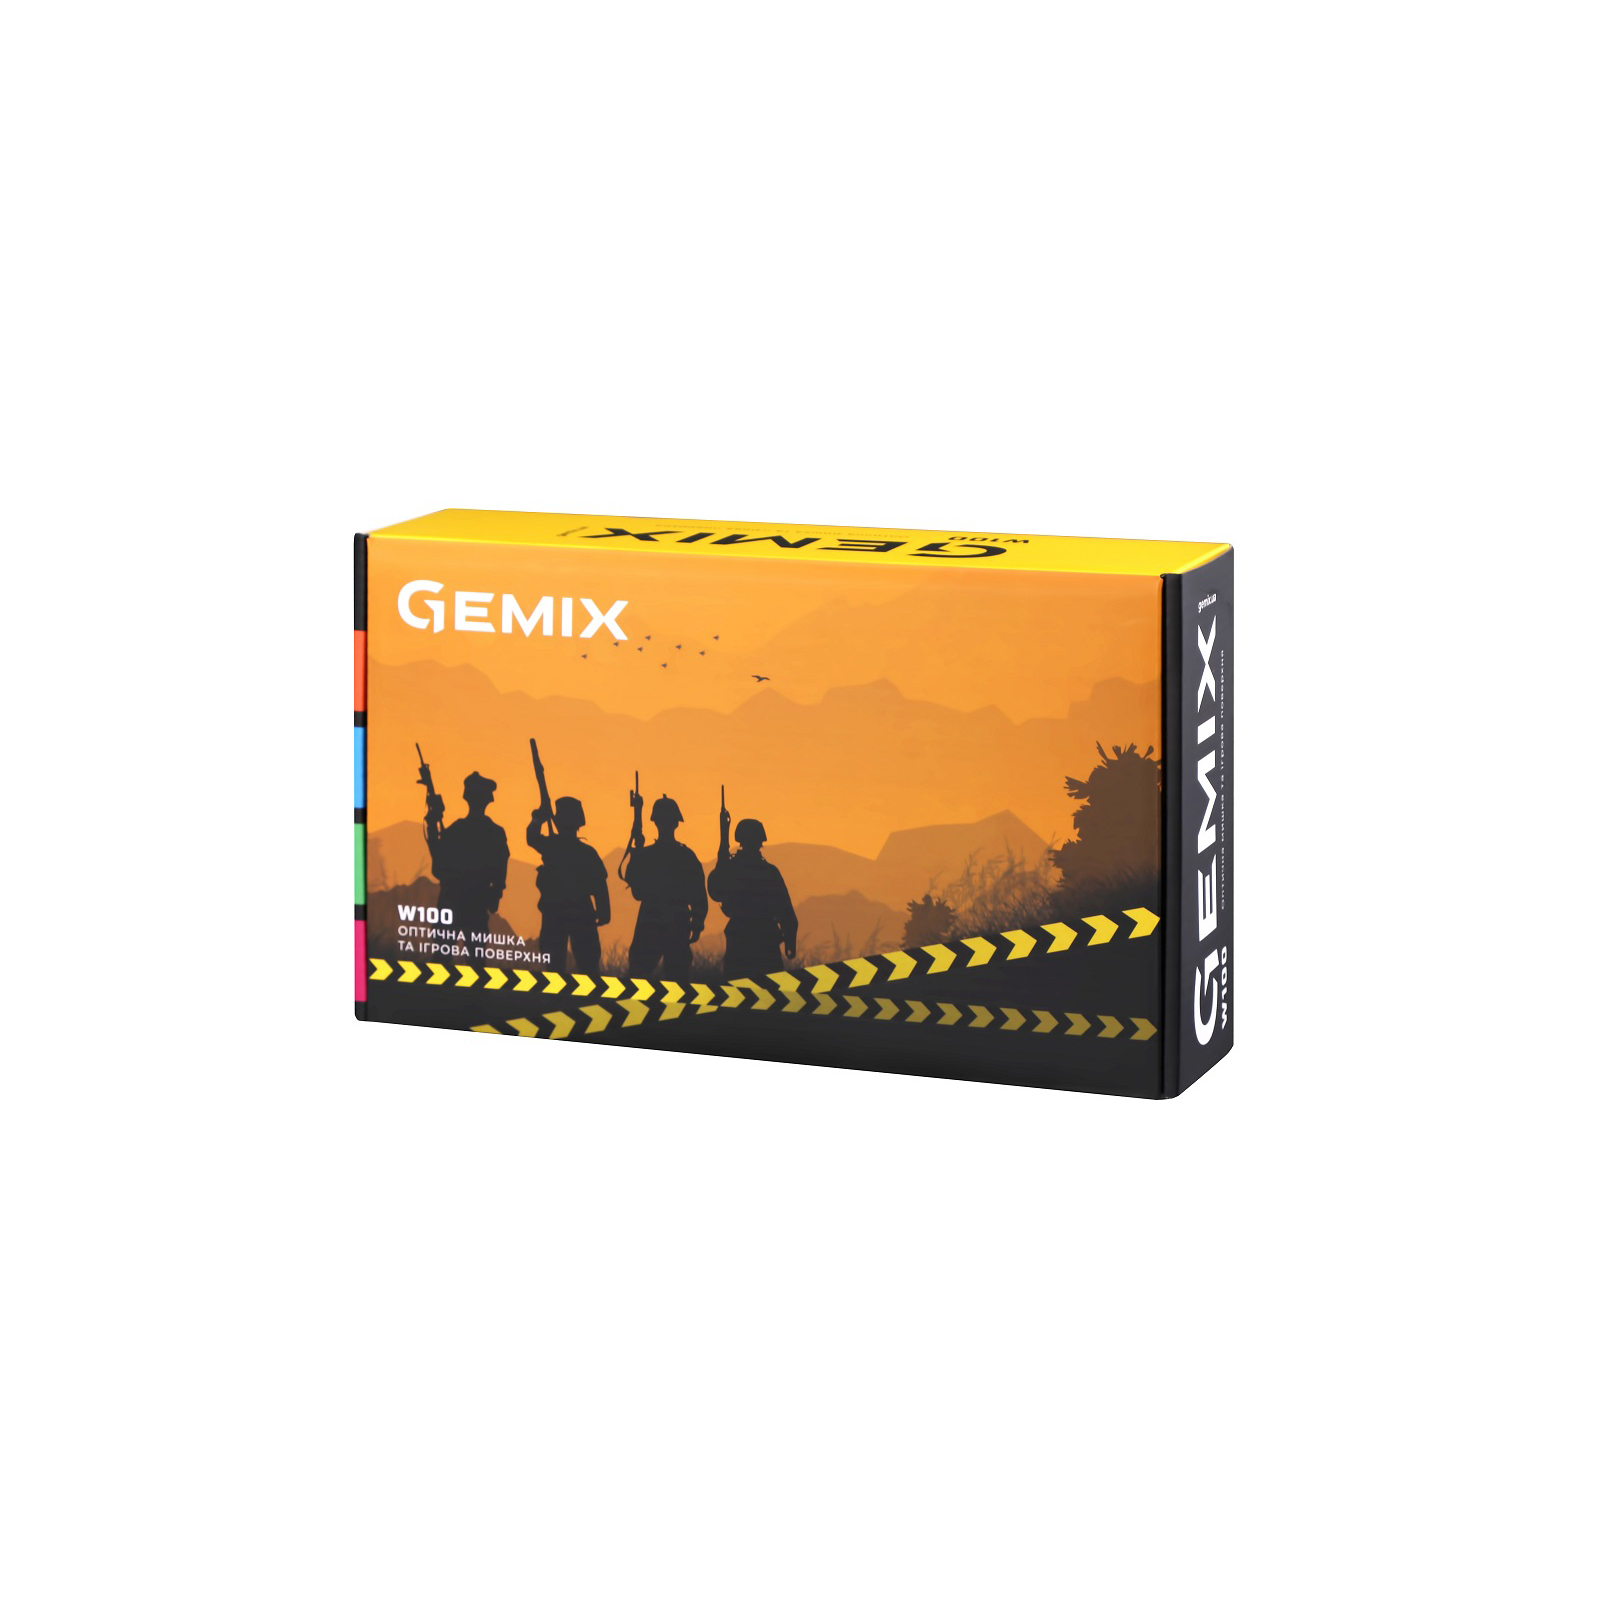 Мышка Gemix W100 USB Black/Gray + ігрова поверхня (W100Combo) изображение 9